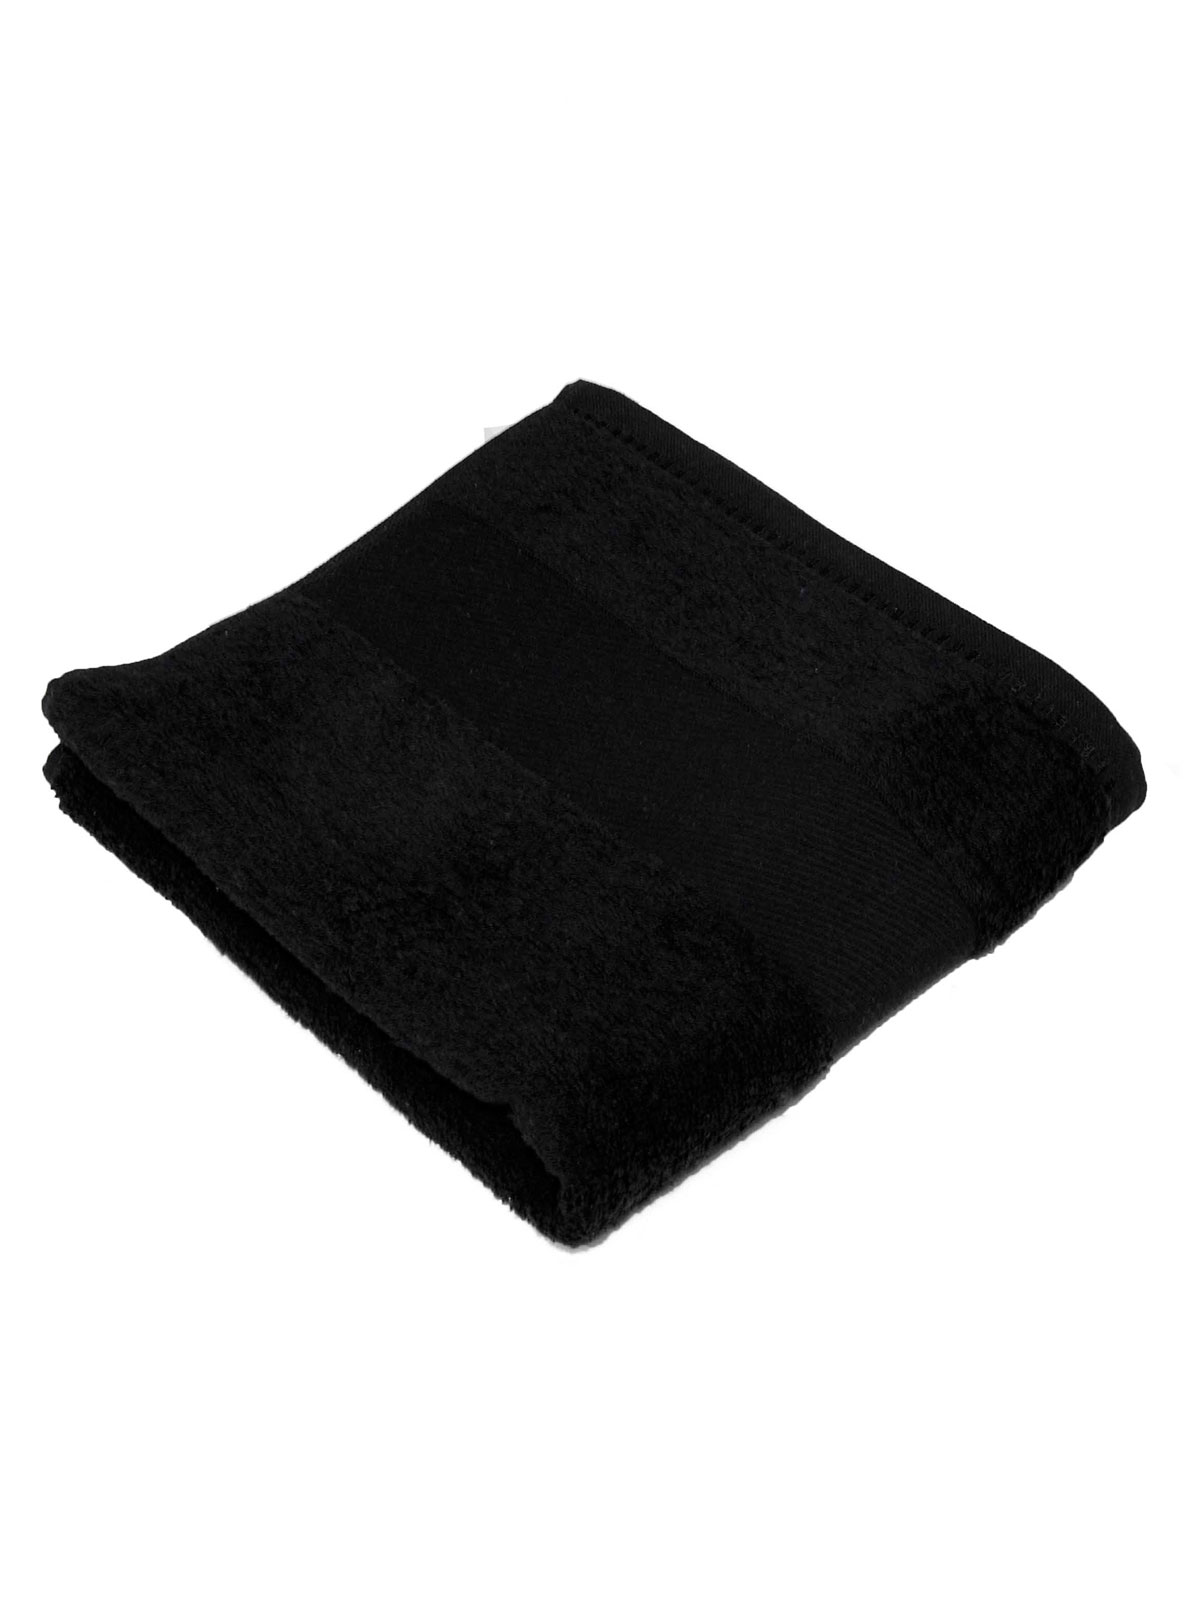 classic-towel-70x140-black.webp